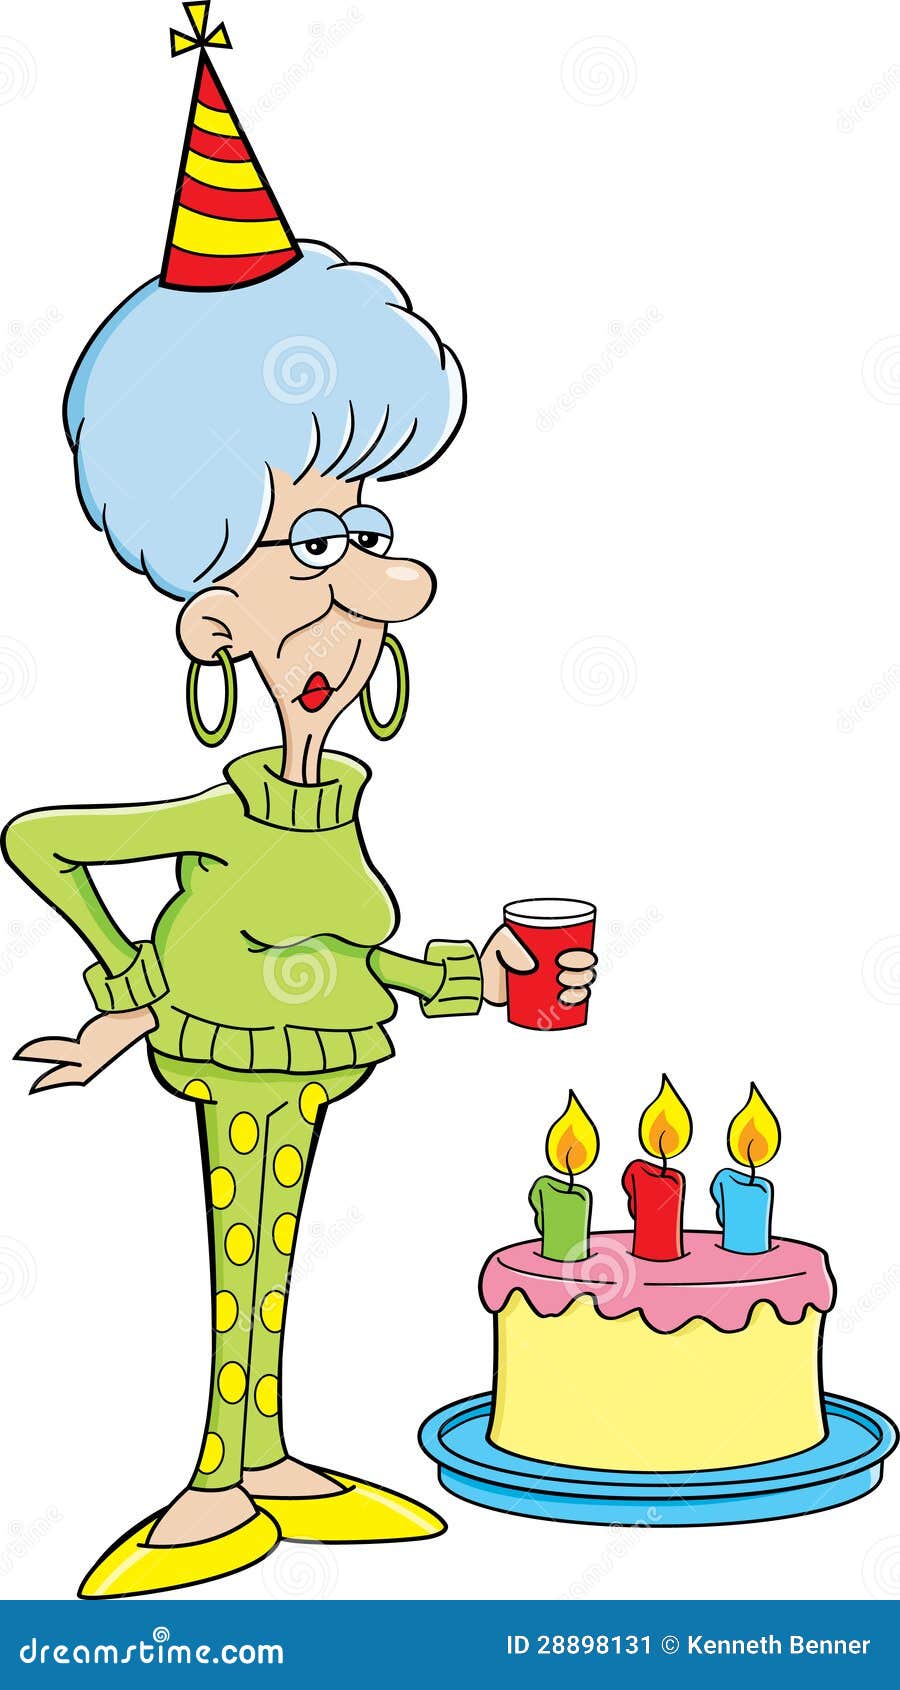 donne-anziane-del-fumetto-con-una-torta-di-compleanno-28898131